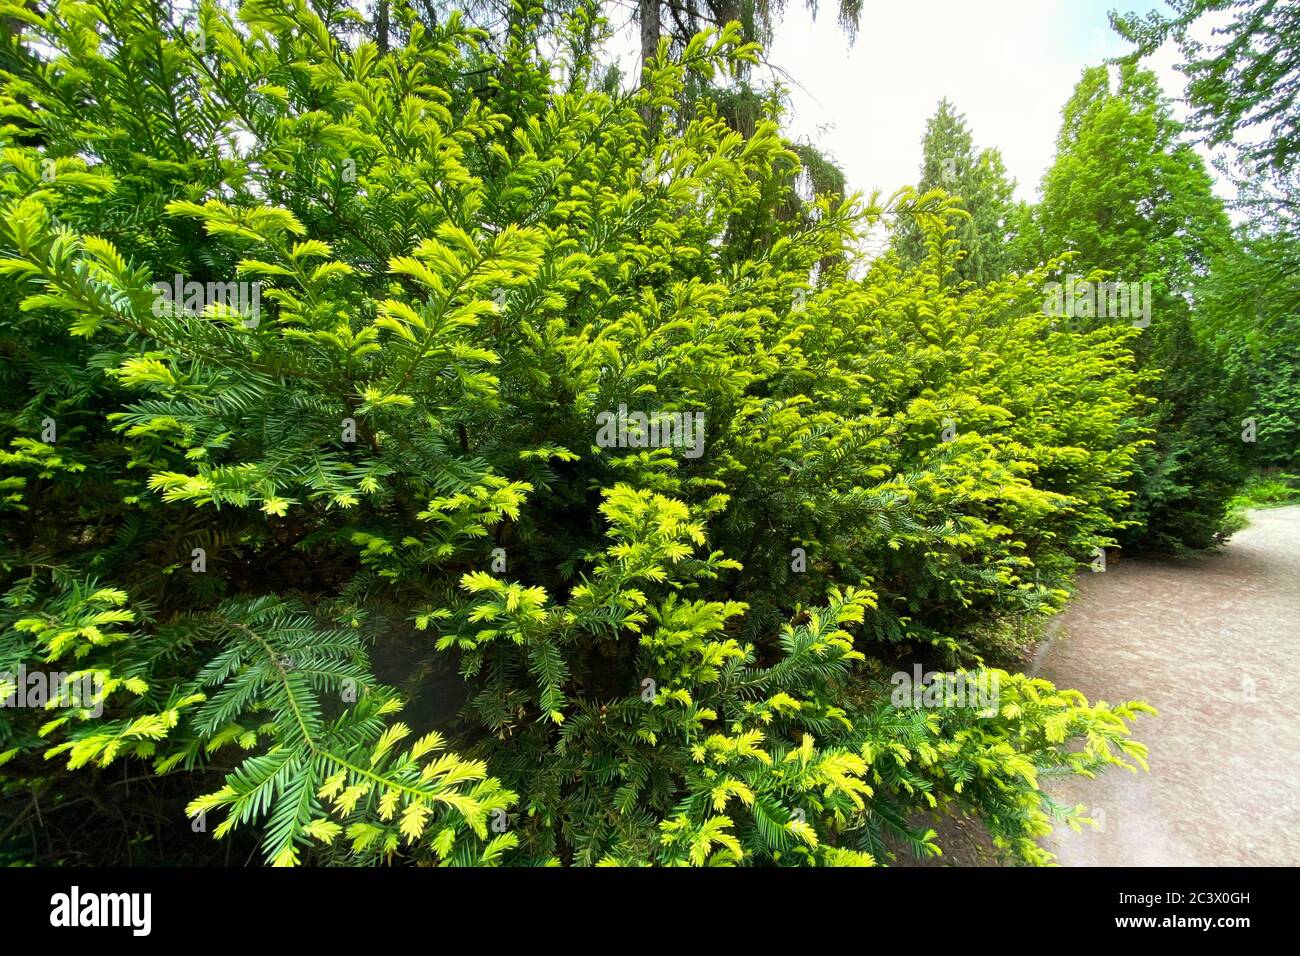 Garten- und Landschaftsbau mit grünen Zierbäumen und Pflanzen. Zweige immergrüner Nadelbäume in einem Stadtpark. Stockfoto